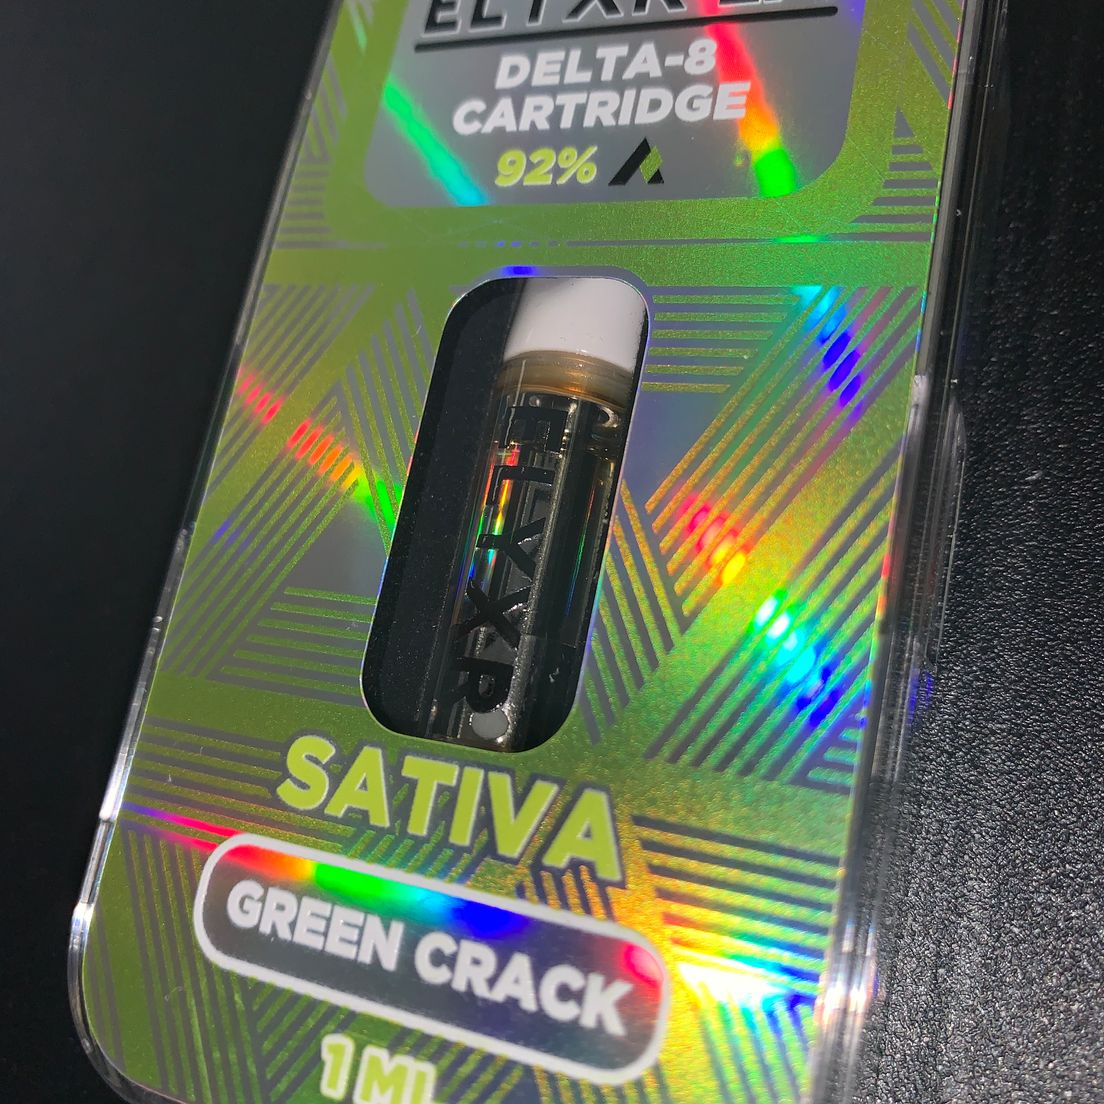 Elyxr LA Cartridge - Sativa Green Crack